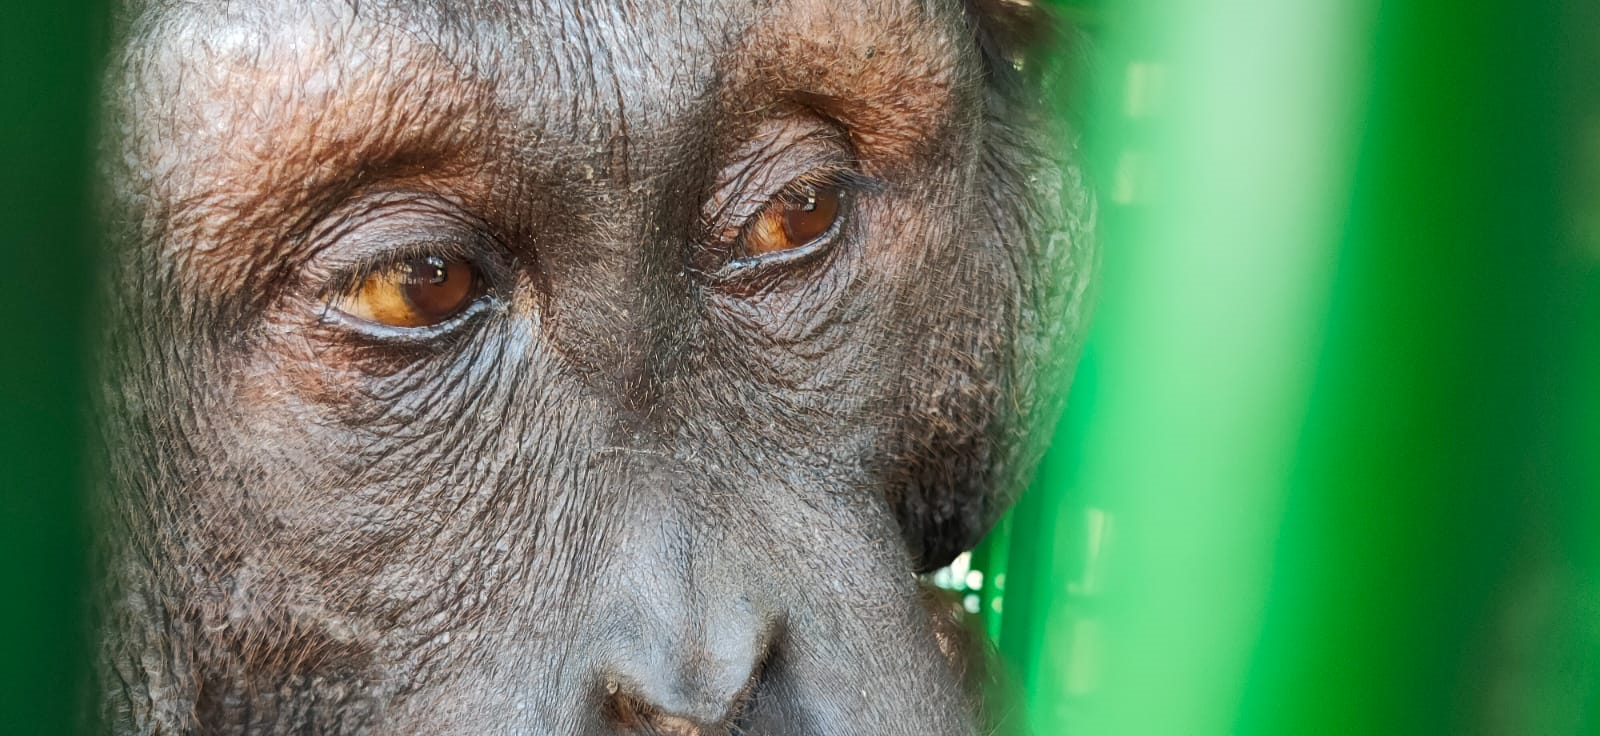 Individu orangutan kalimantan berhasil dievakuasi. | Sumber: PPID KLHK